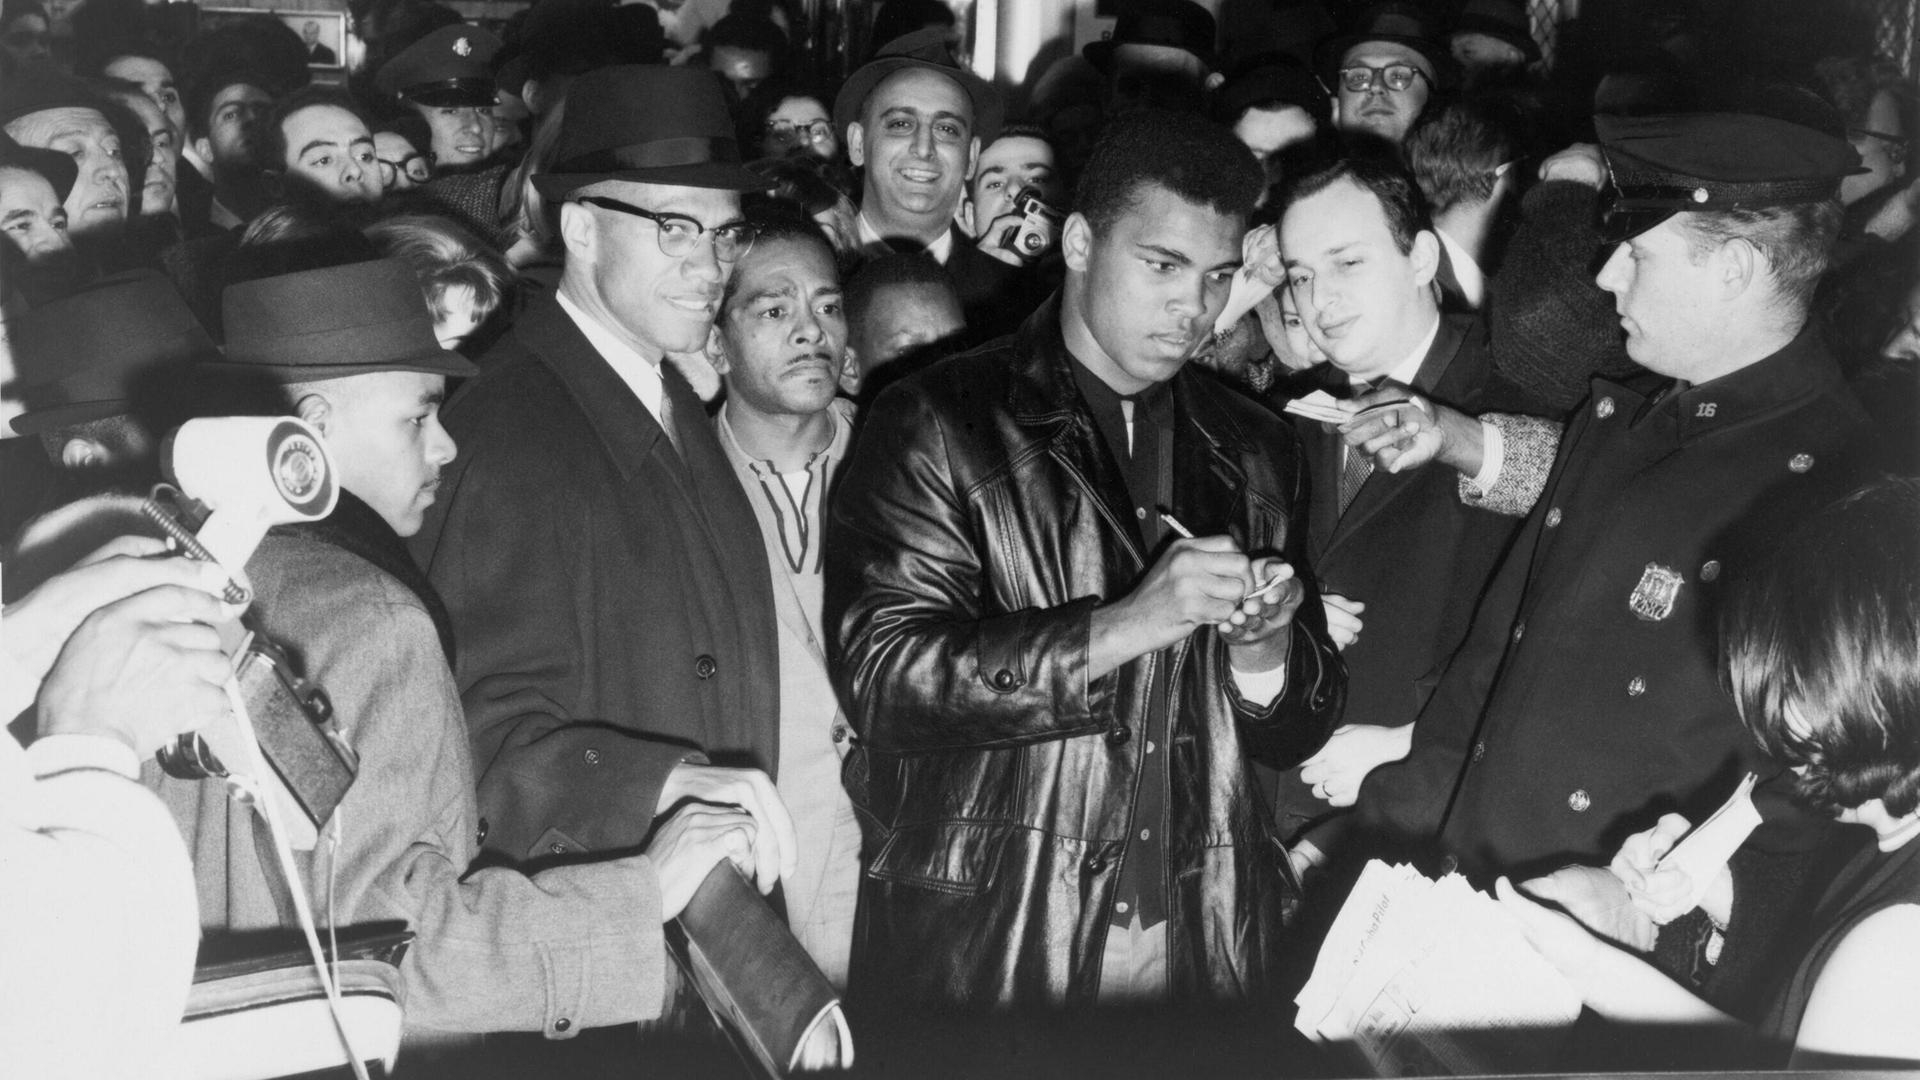 Muhammad Ali (Cassius Clay) schreibt nach dem Gewinn des Weltmeistertitels Autogramme in New York. Zu seiner Rechten steht mit Brille und Hut der politische Aktivist Malcom X.